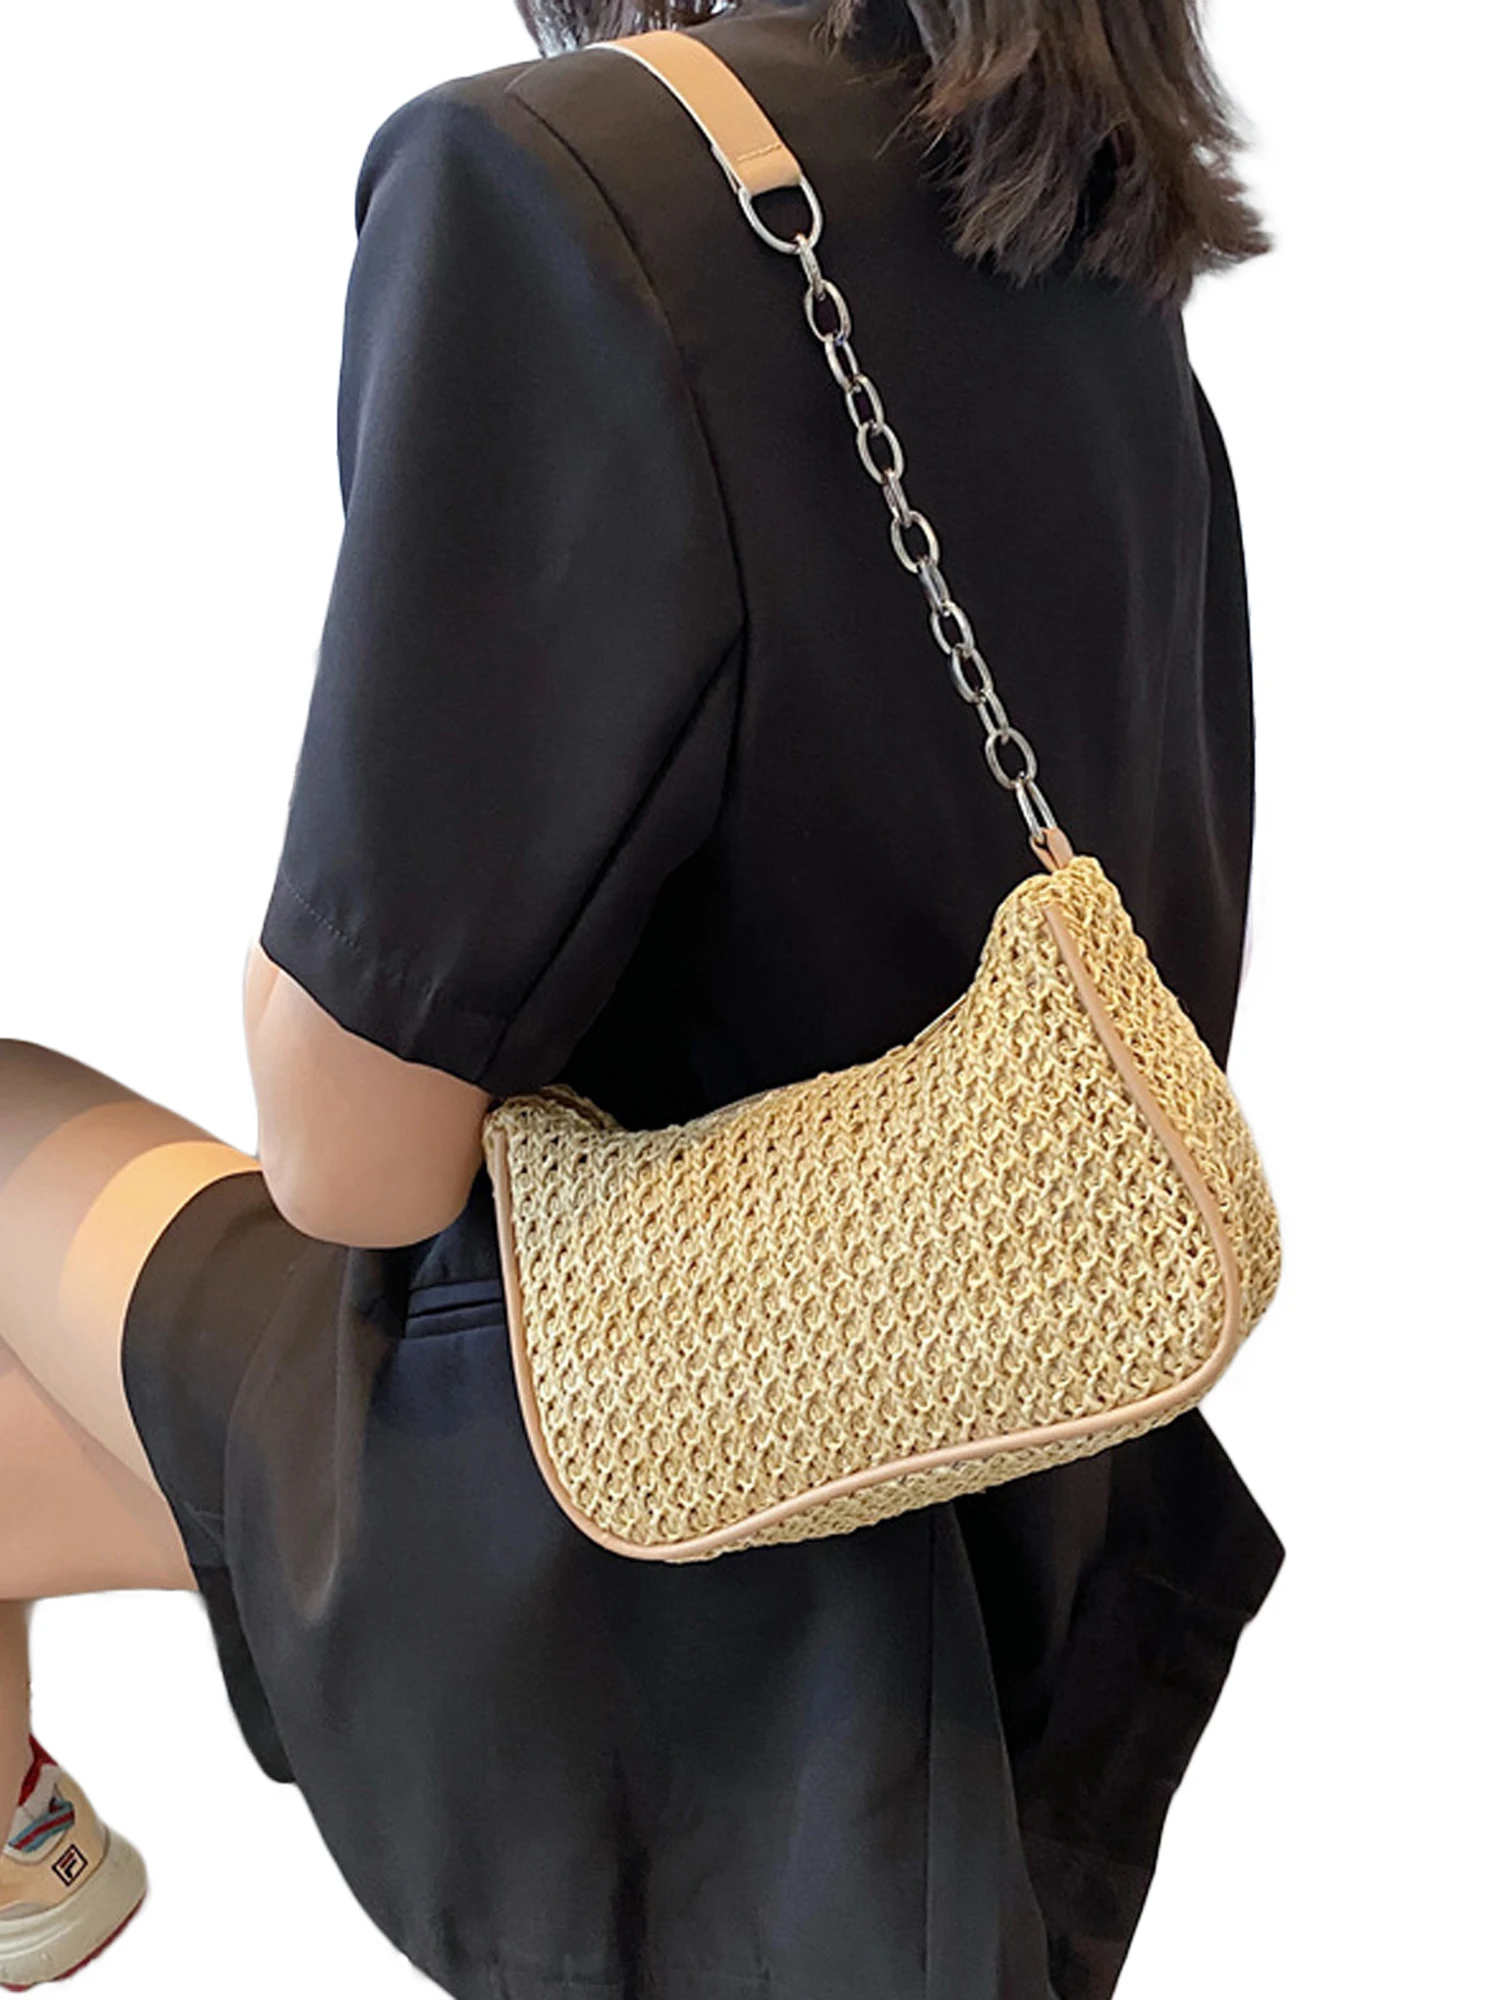 Женская сумка на плечо, многофункциональная вместительная однотонная сумка для женщин, цвета хаки/бежевый